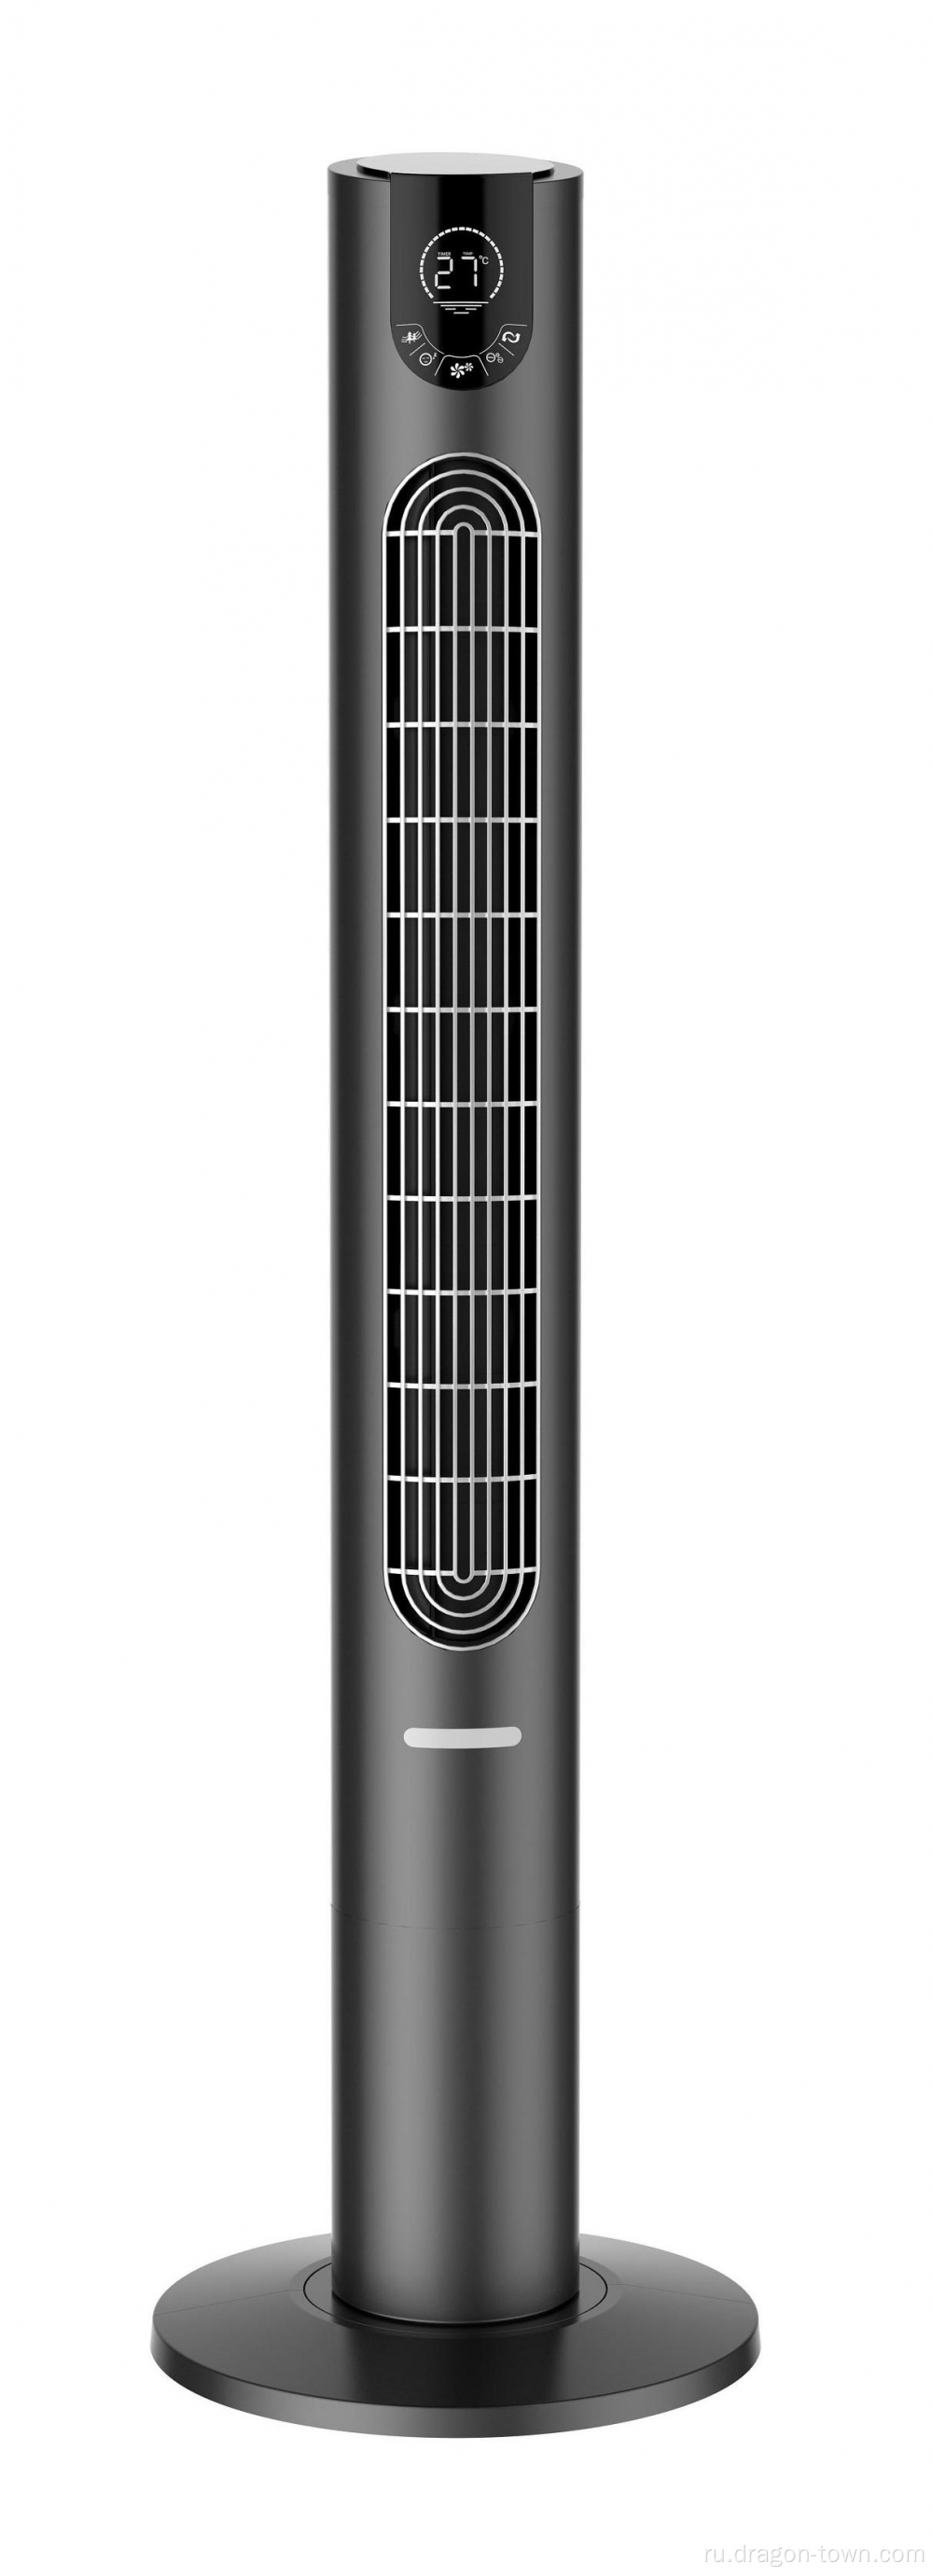 45 -дюймовый высококачественный вентилятор башни в черном